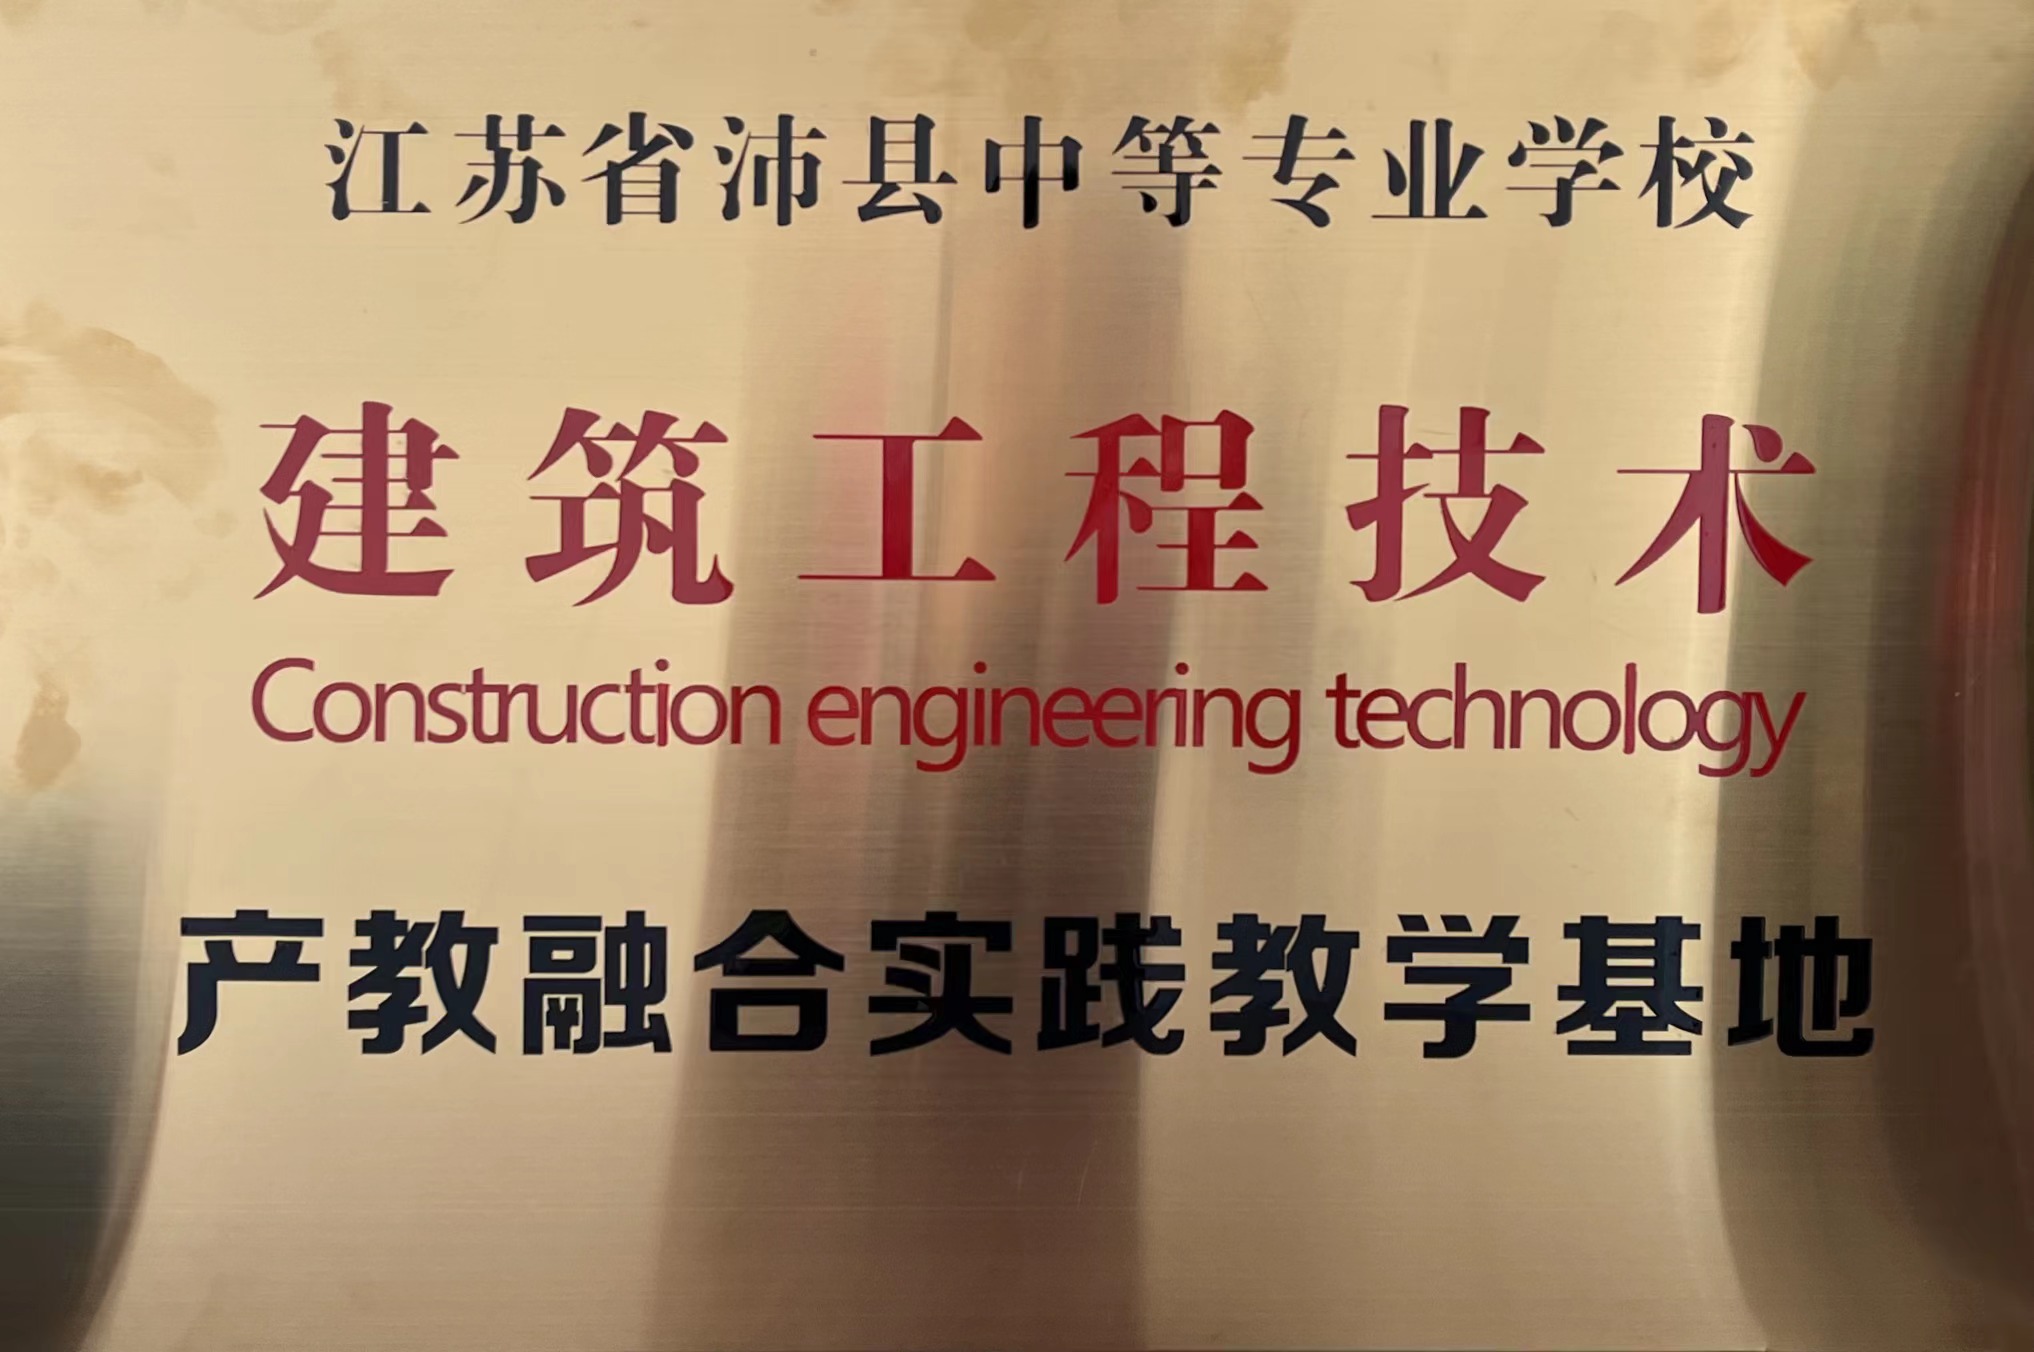 5-建筑工程技术产教融合实践教育基地.jpg